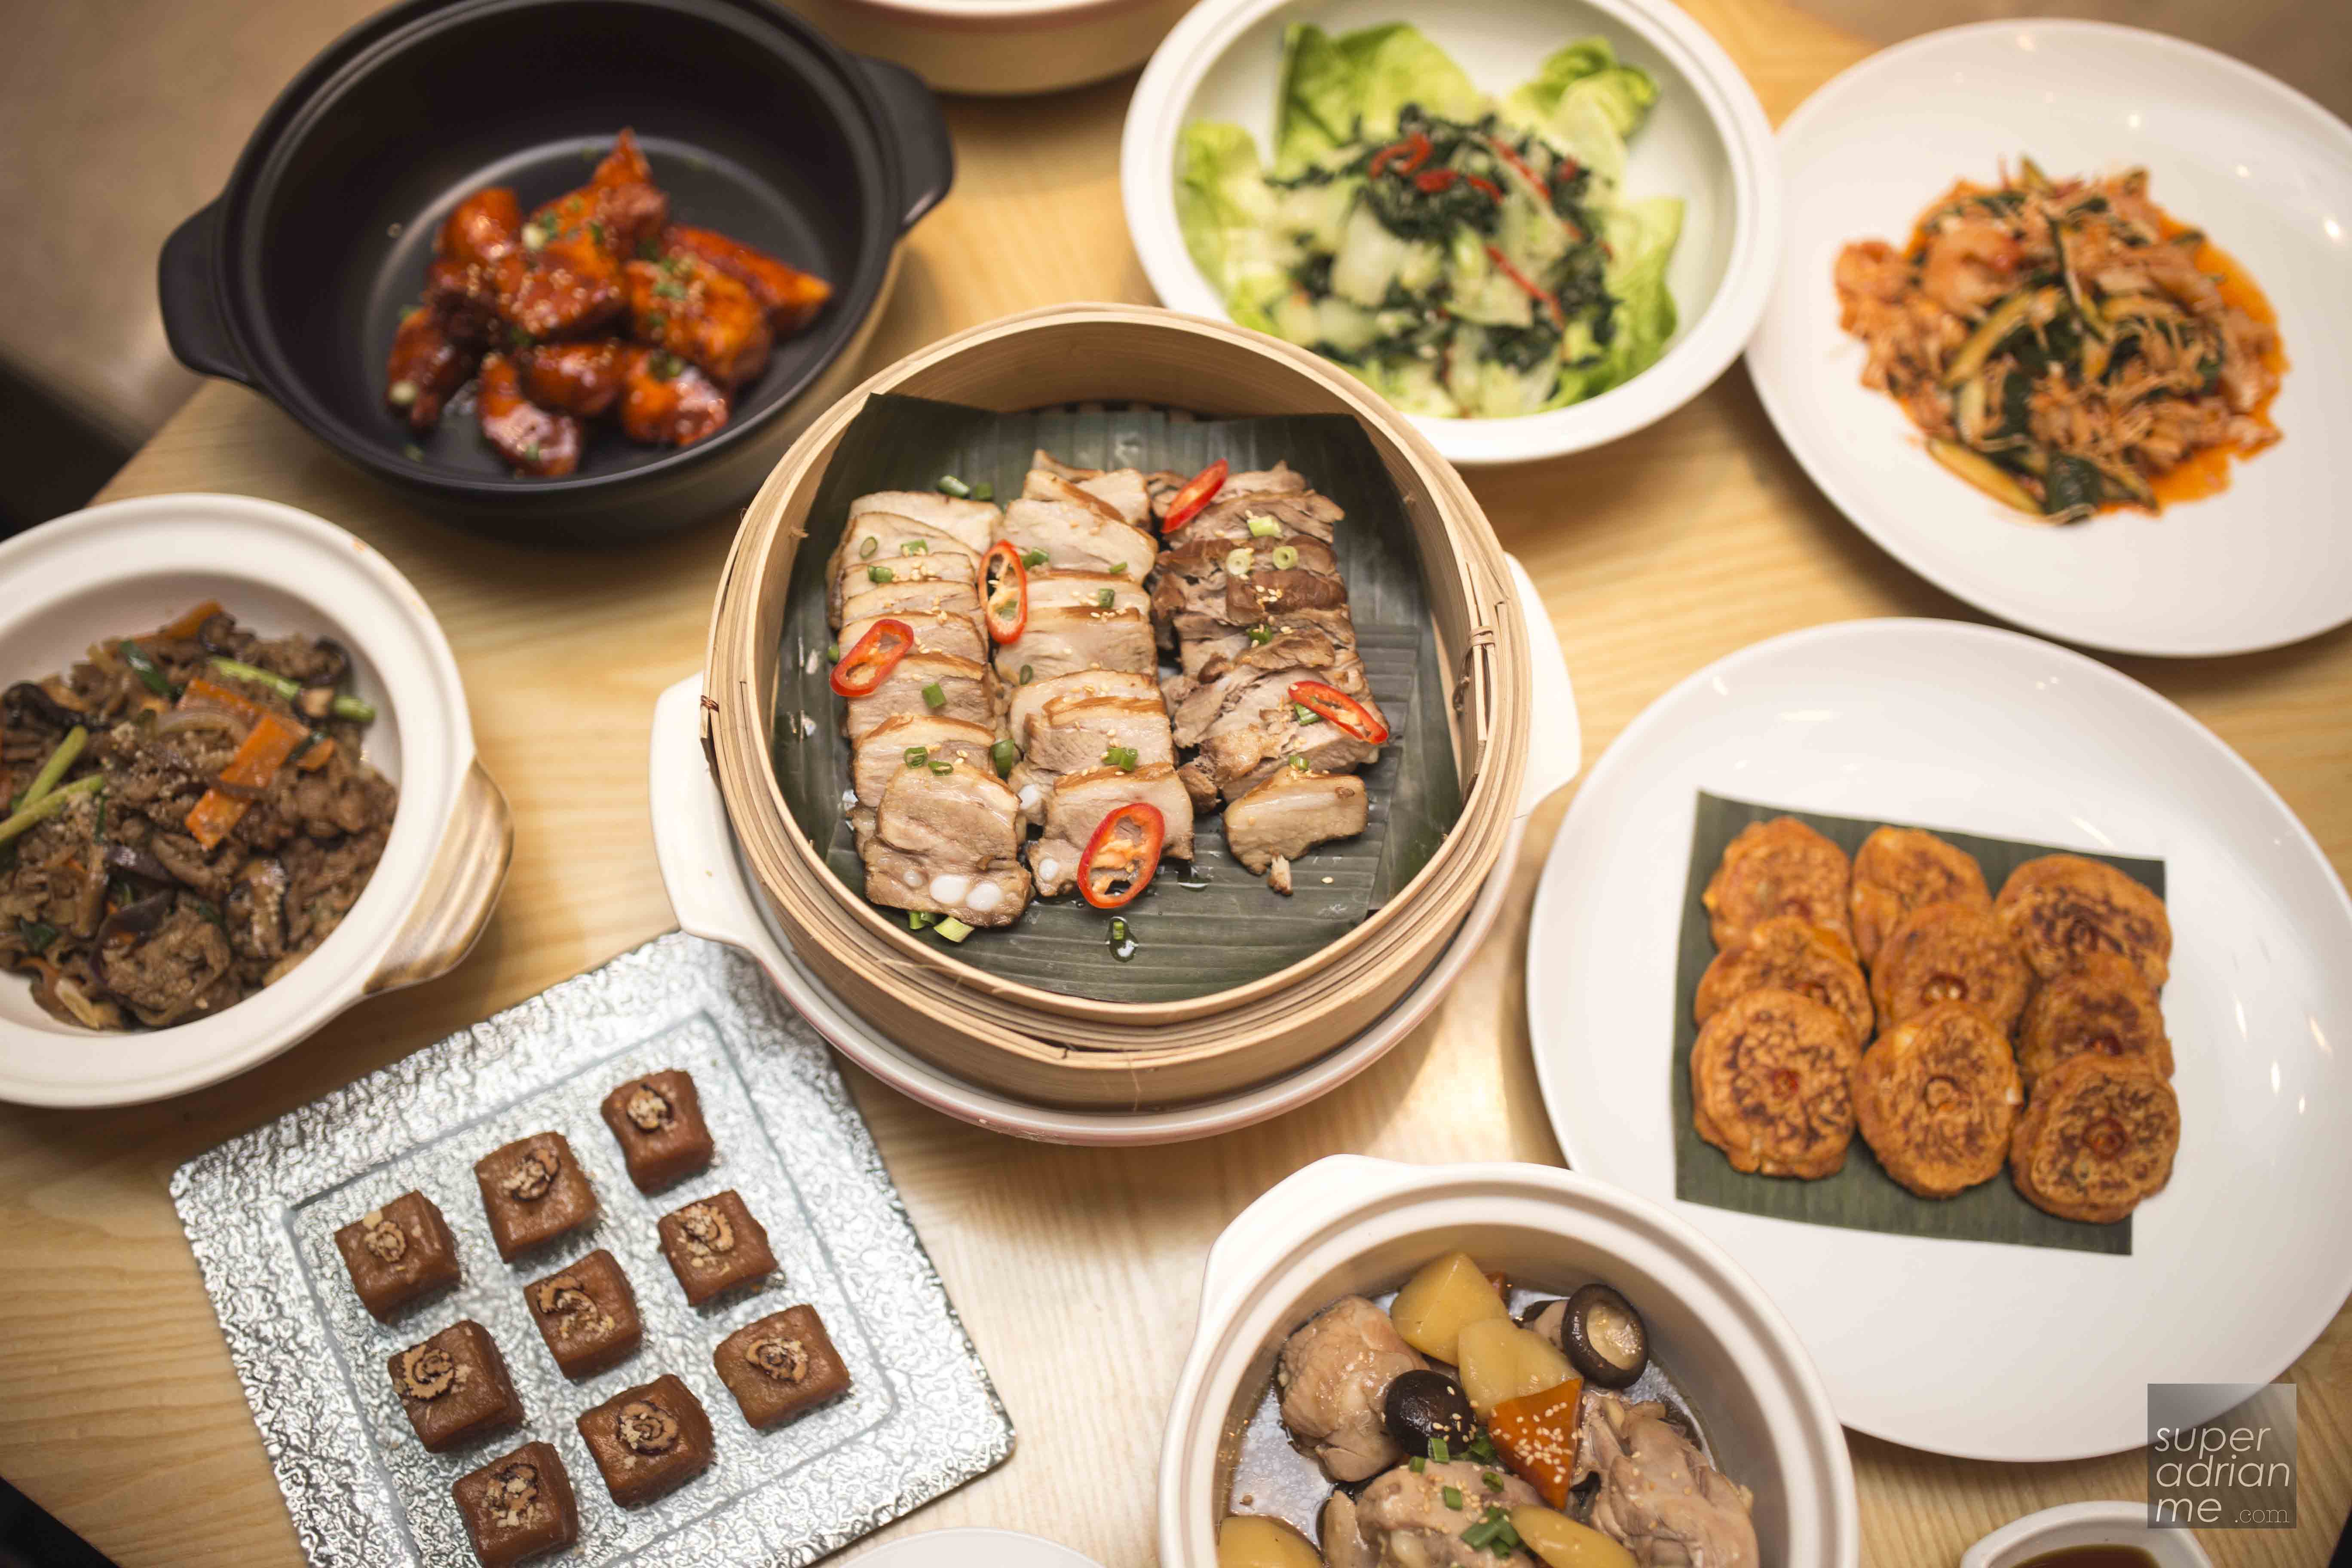 Taste of Korea Buffet at Marriott Cafe till 31 August 2016